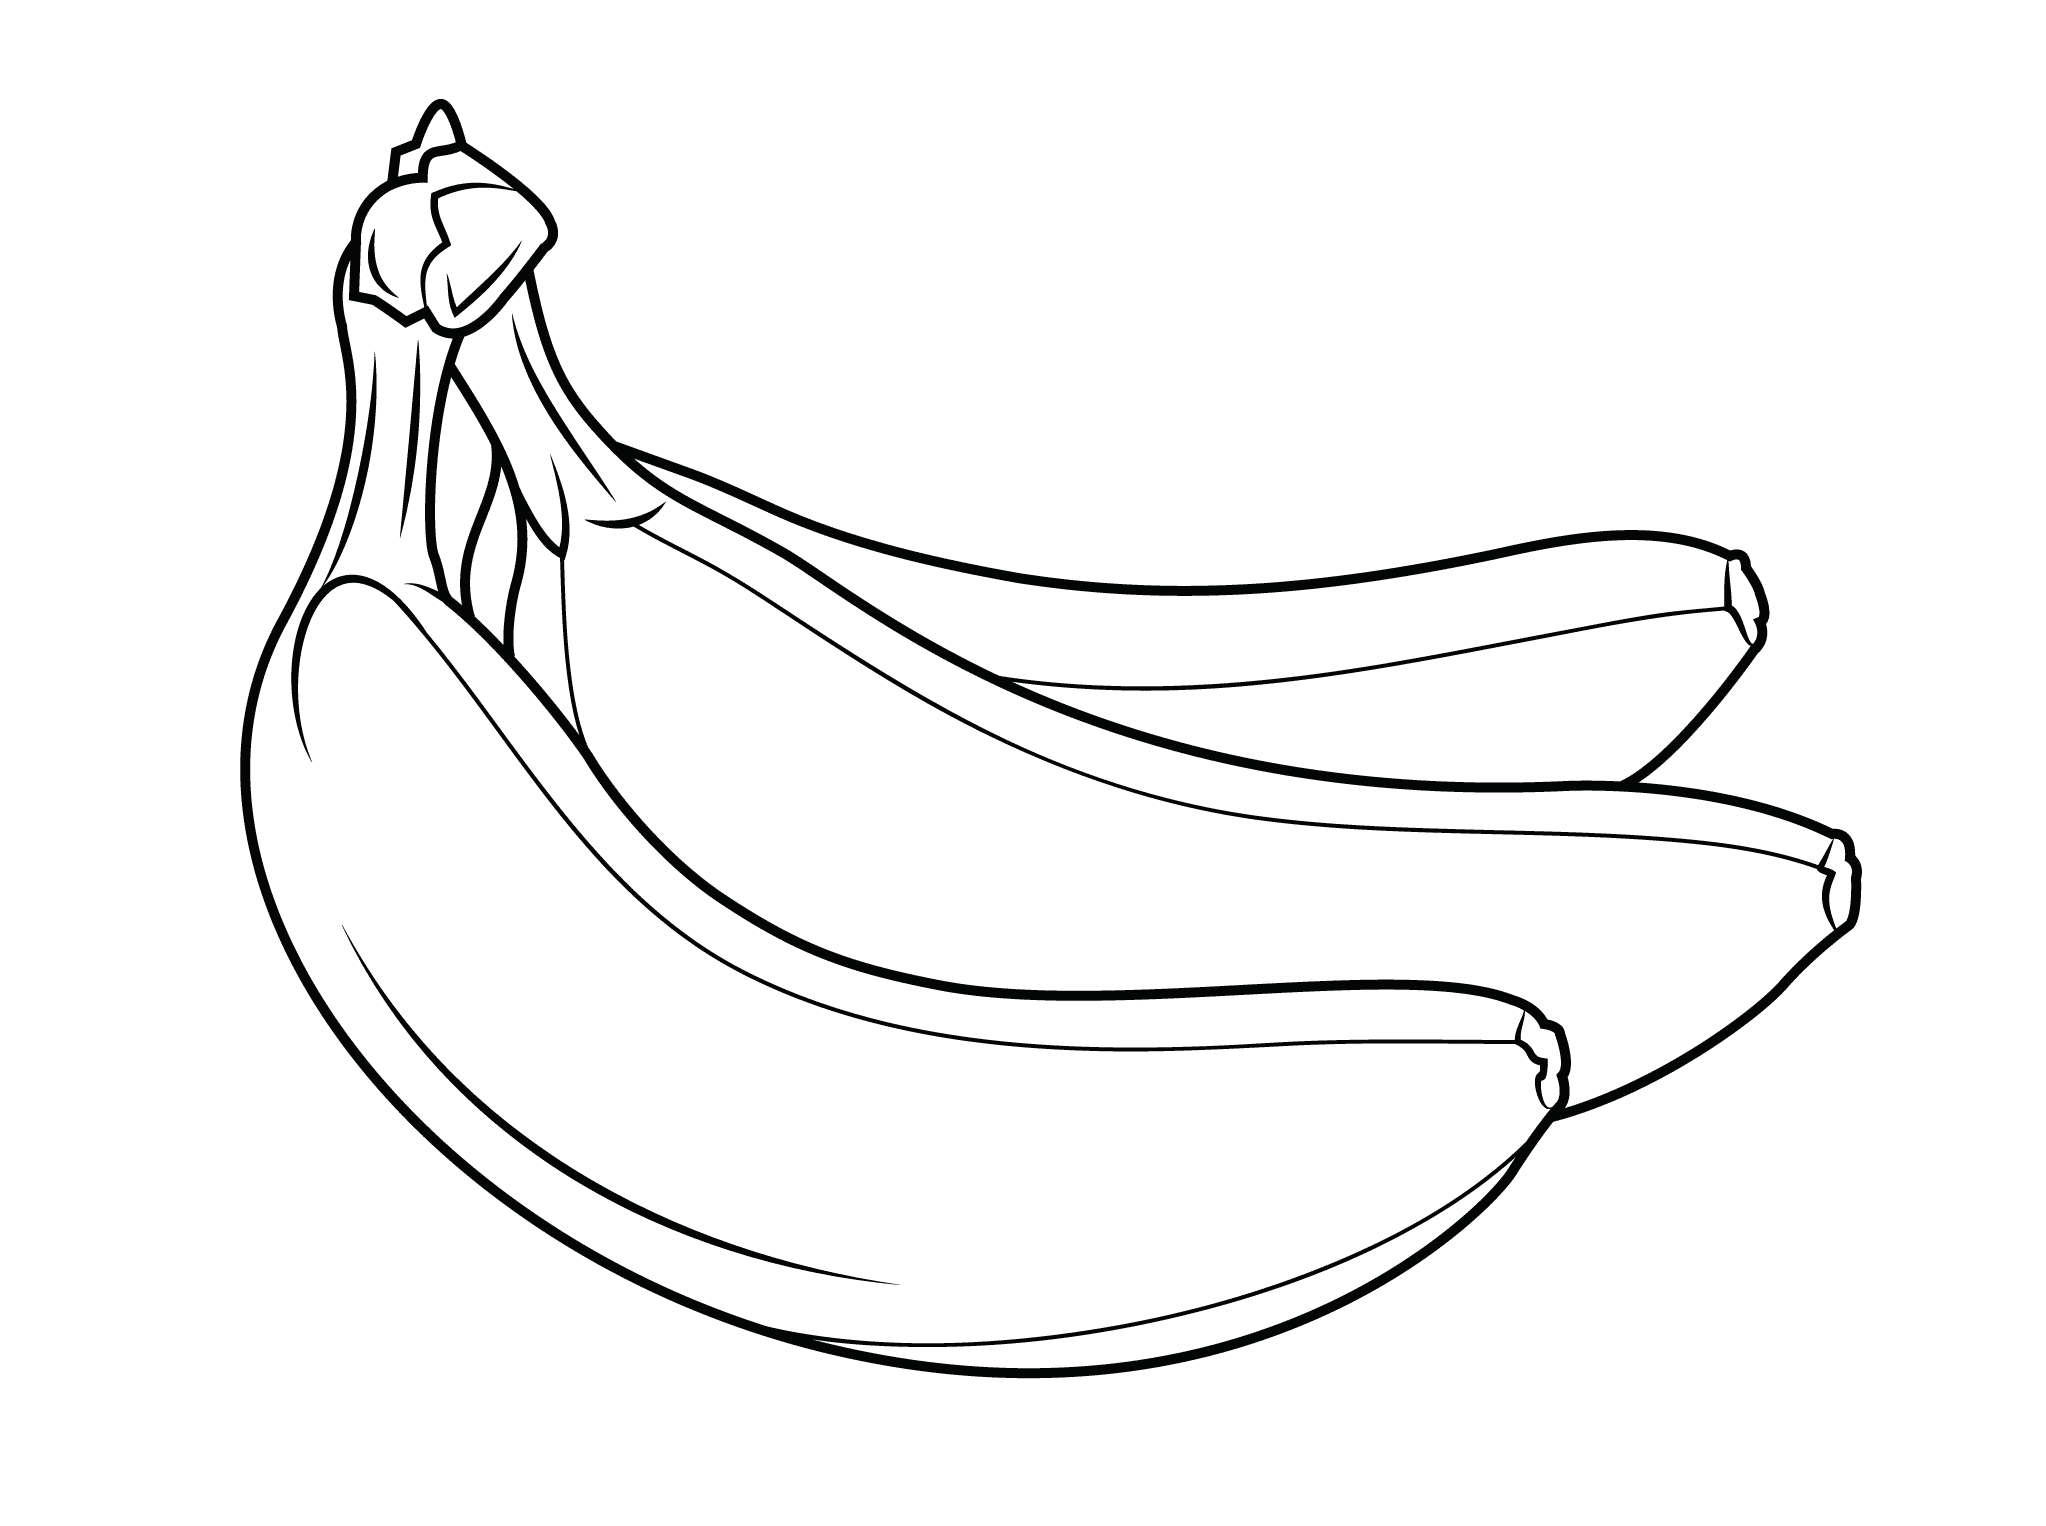 Banana Fruits Coloring Page